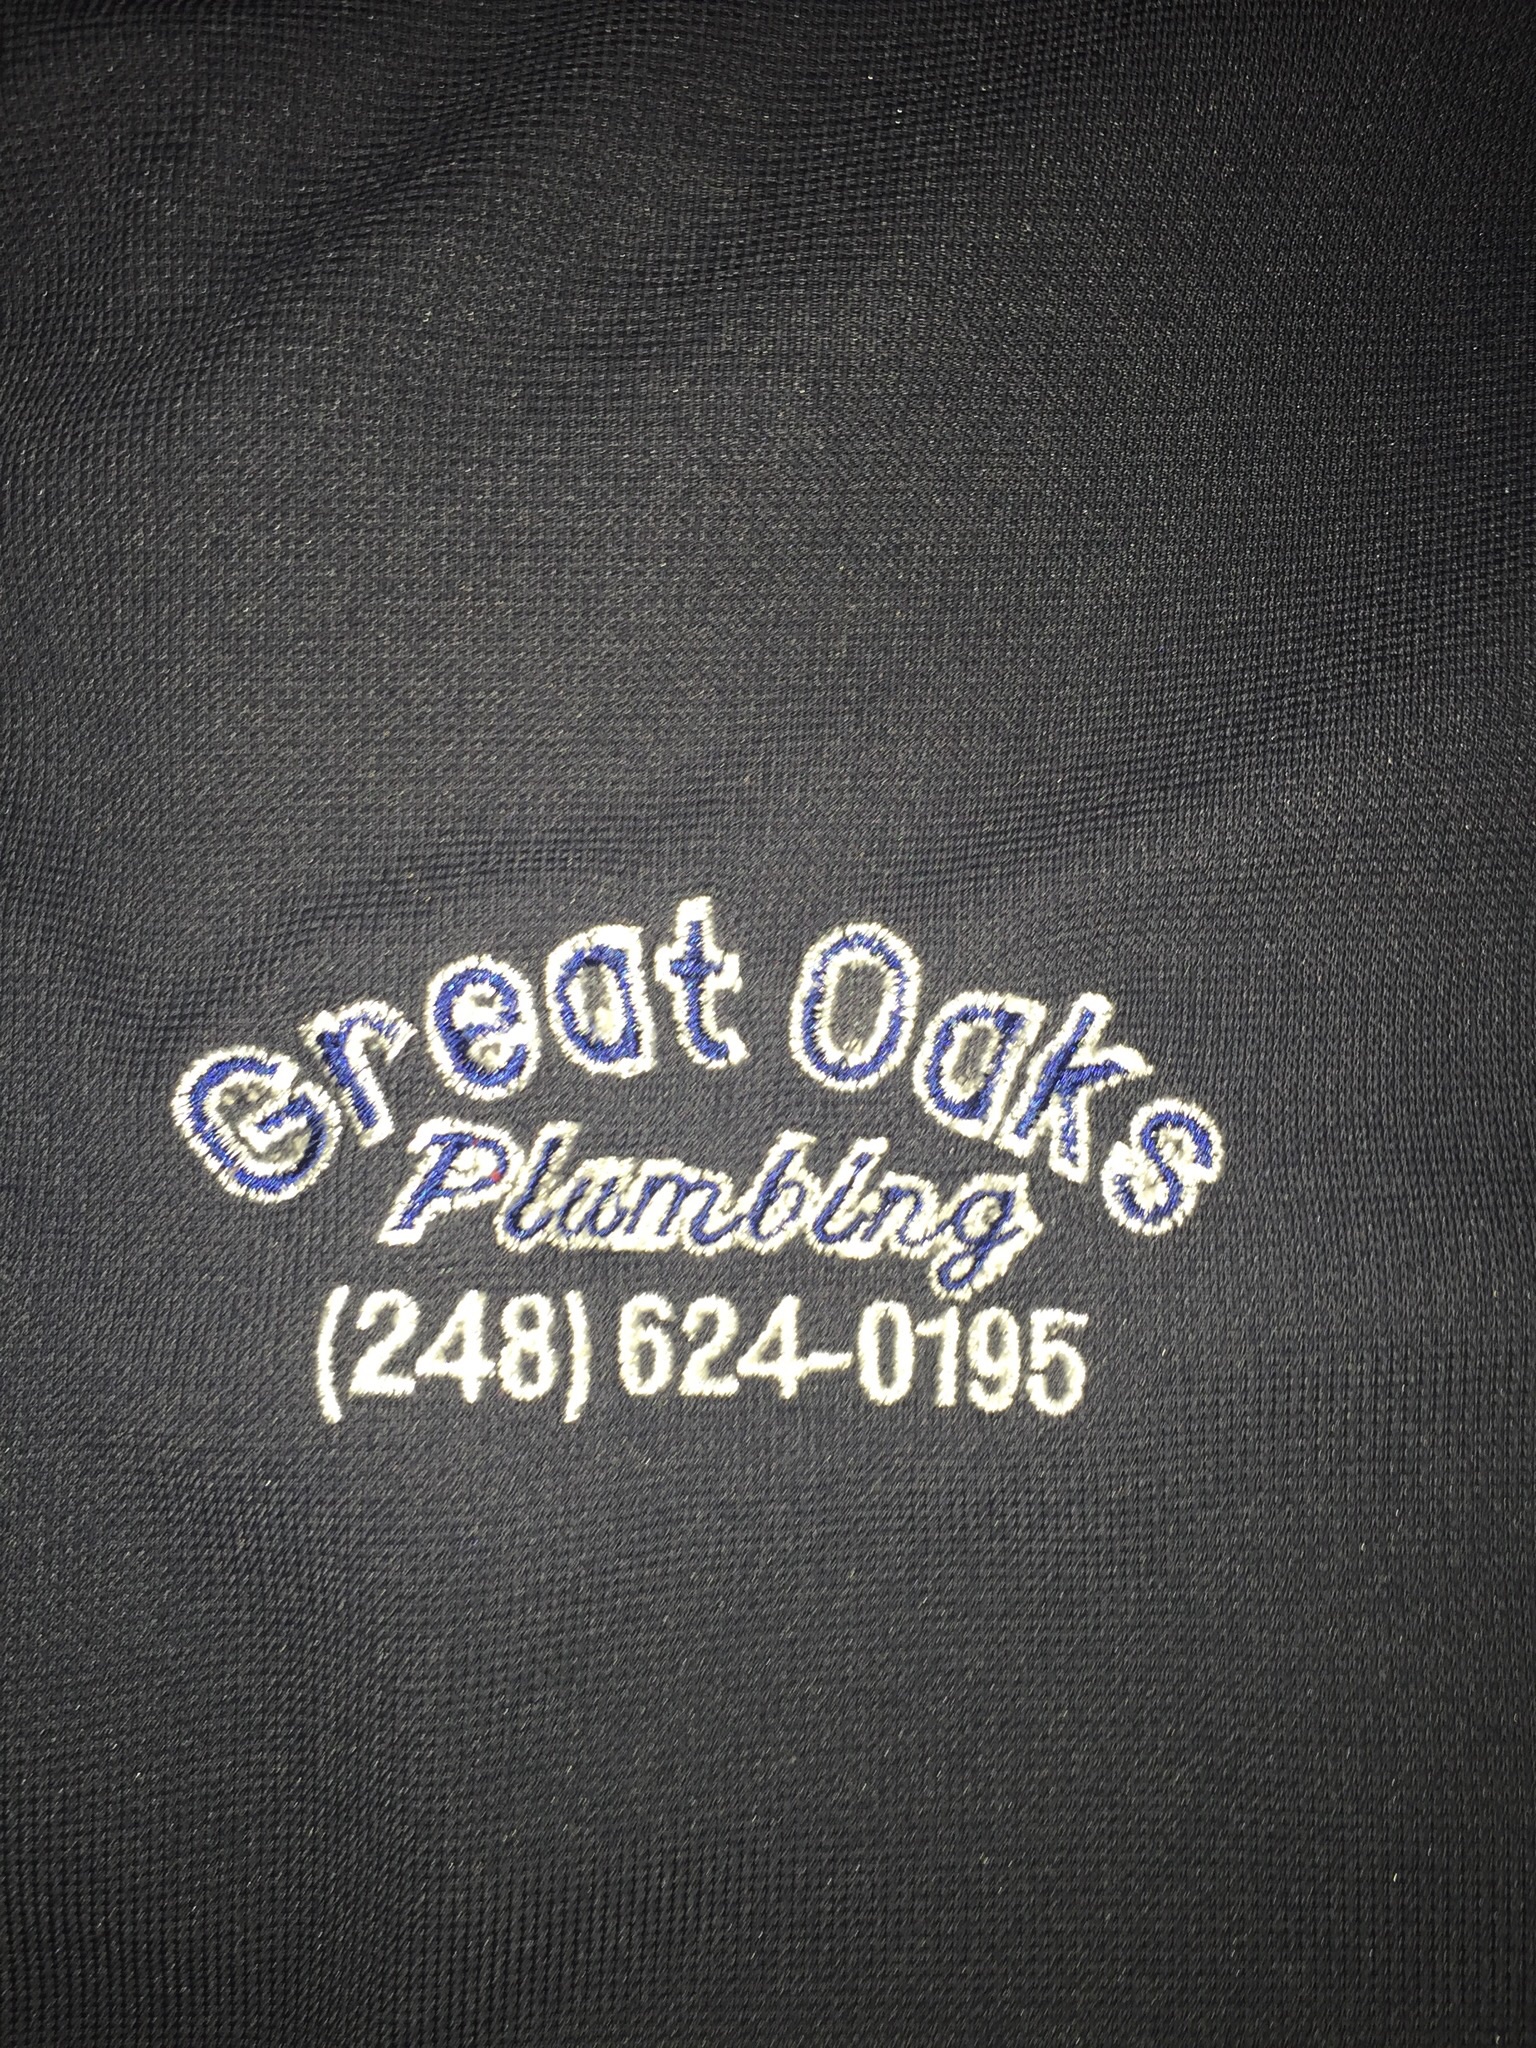 Great Oaks Plumbing Logo